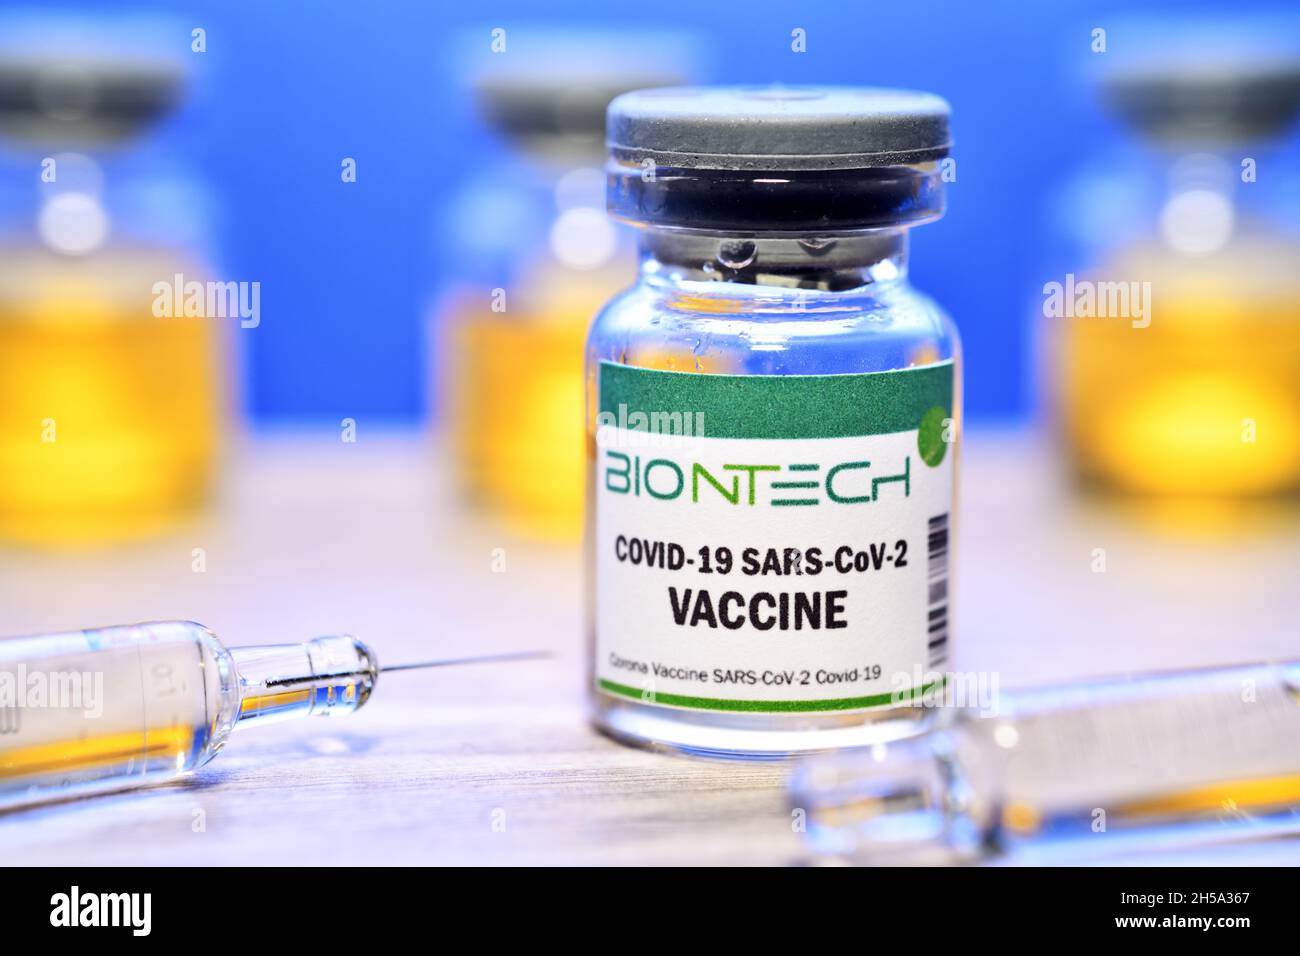 Injektionsflasche mit Impsprritzen, Corona-Impfstoff von Biontech, Symbolfoto Banque D'Images